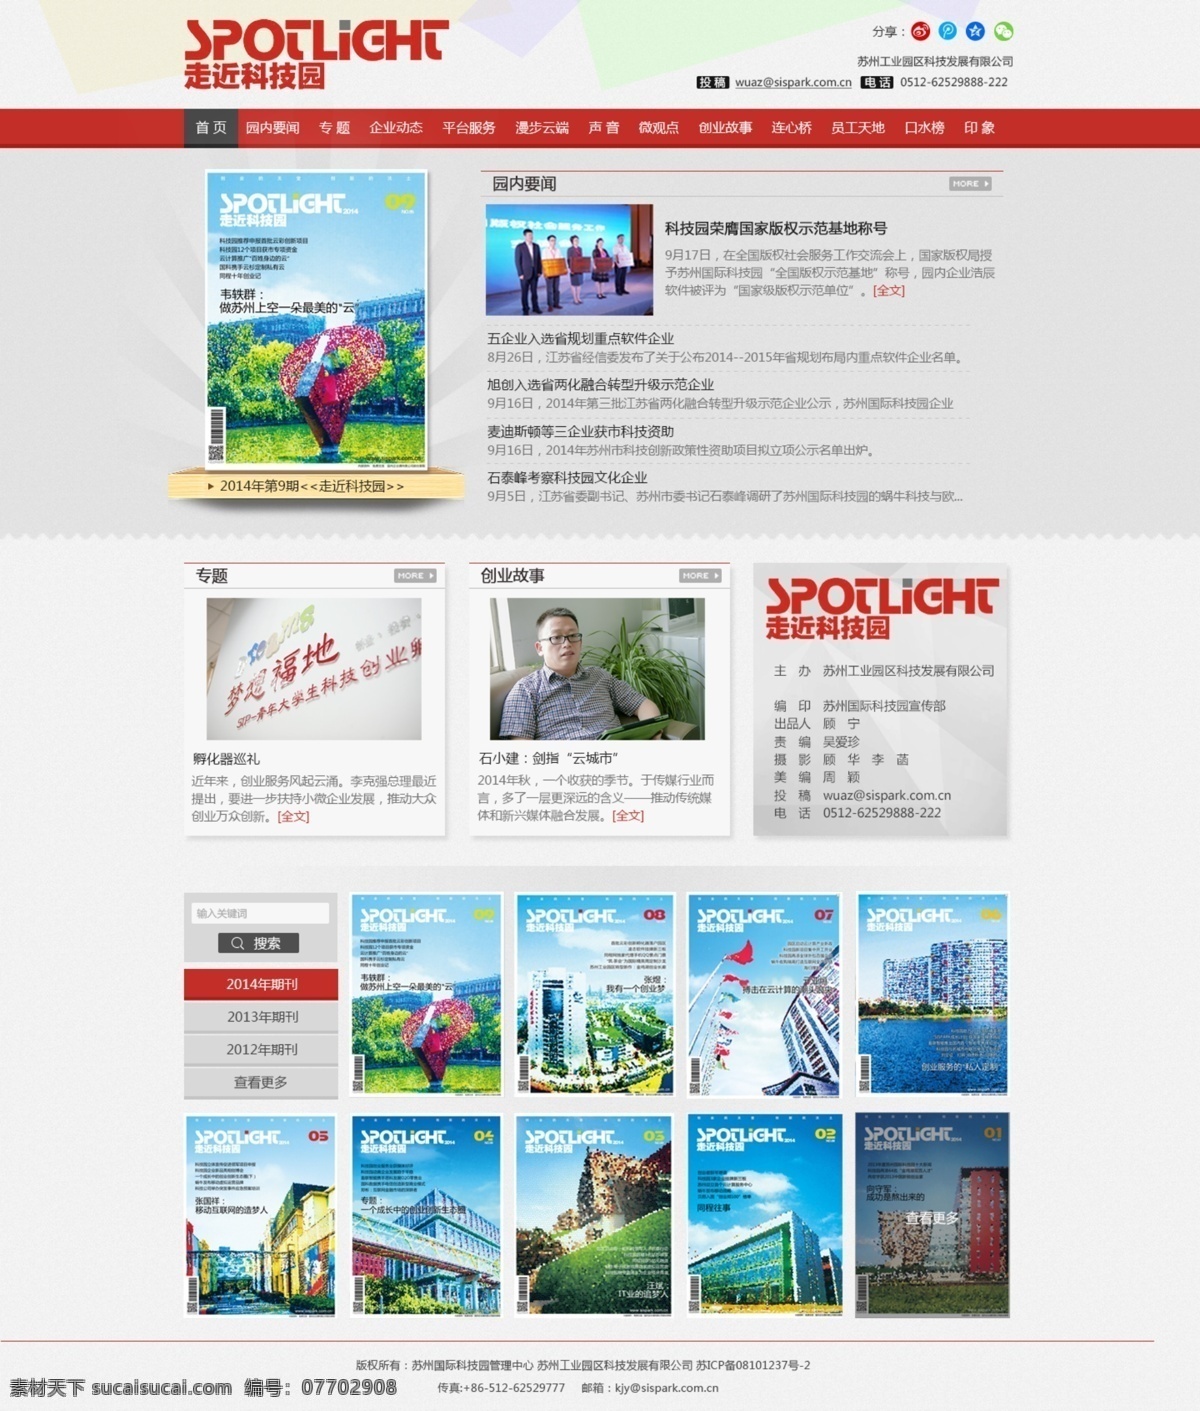 电子期刊 杂志 网页 电子杂志 企业 网站 web 界面设计 中文模板 白色